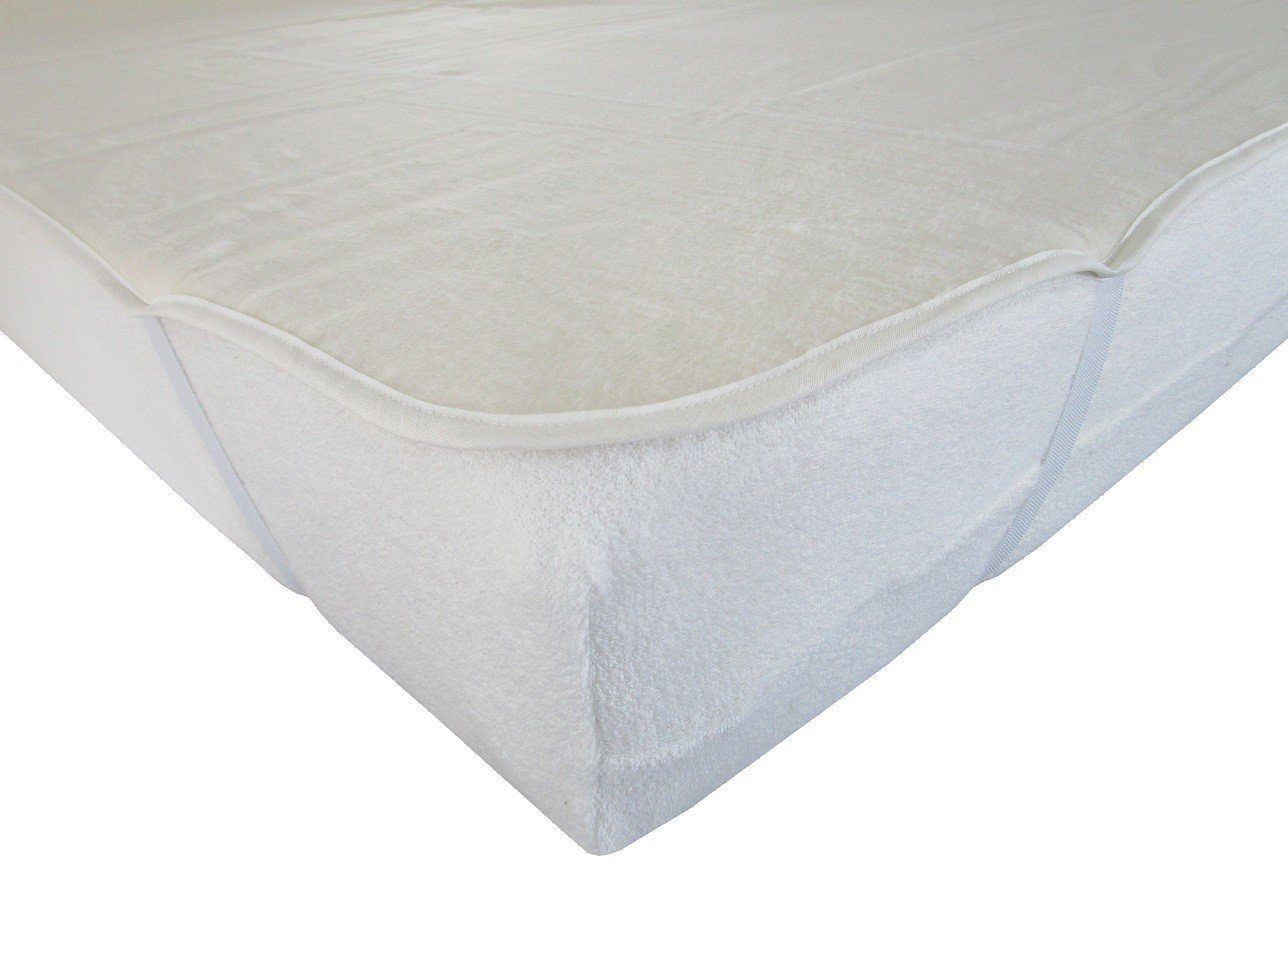 Matratzenauflage Molton mit Eckgummi für Kinderbett DUKAL, 60x120 cm, aus  hochwertigem Kalmuck-Molton, 100% Baumwolle, Made in Germany